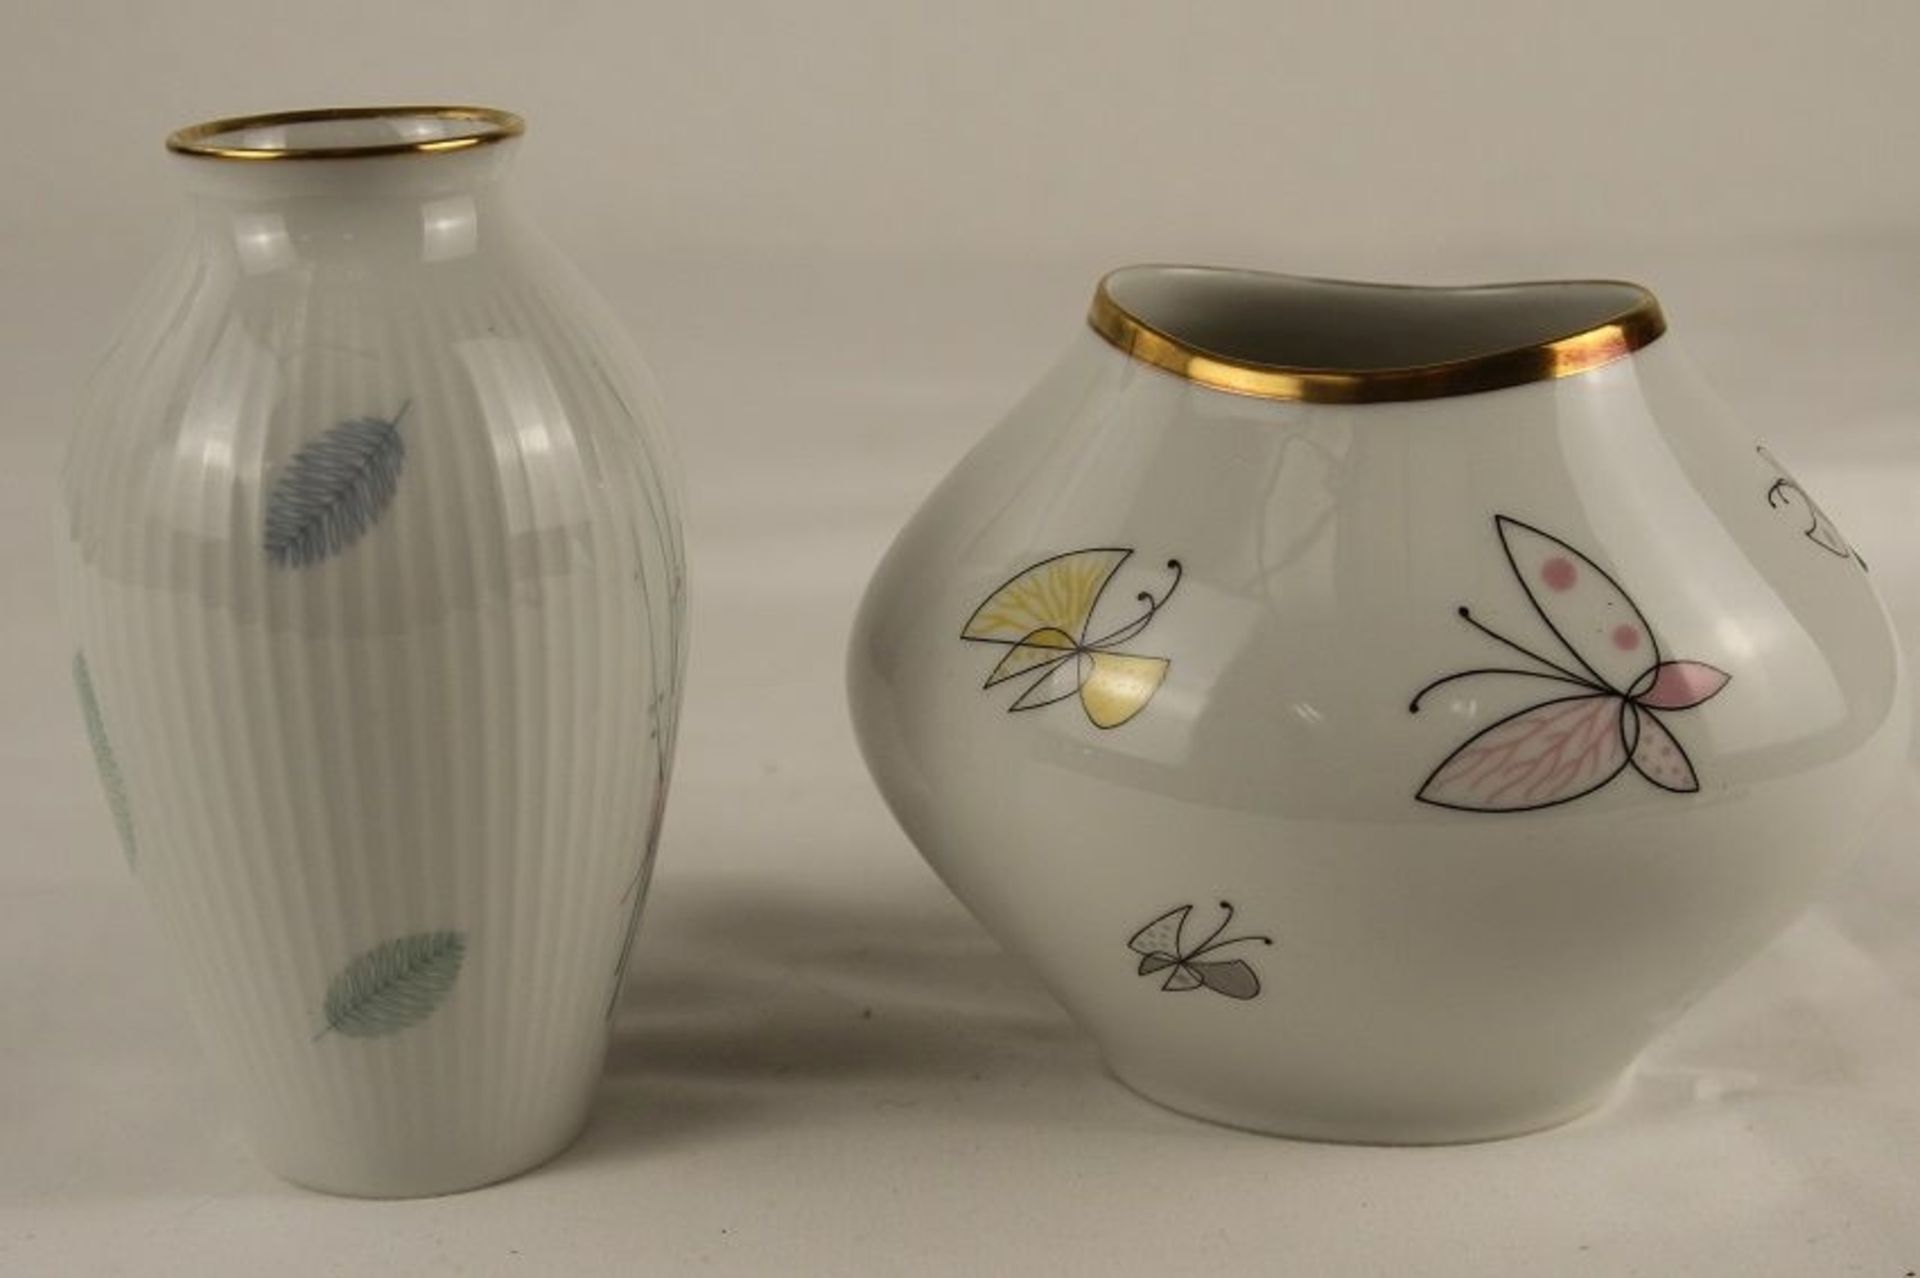 2 Stk. schöne Vintage Porzellan Vasen Thomas 7856